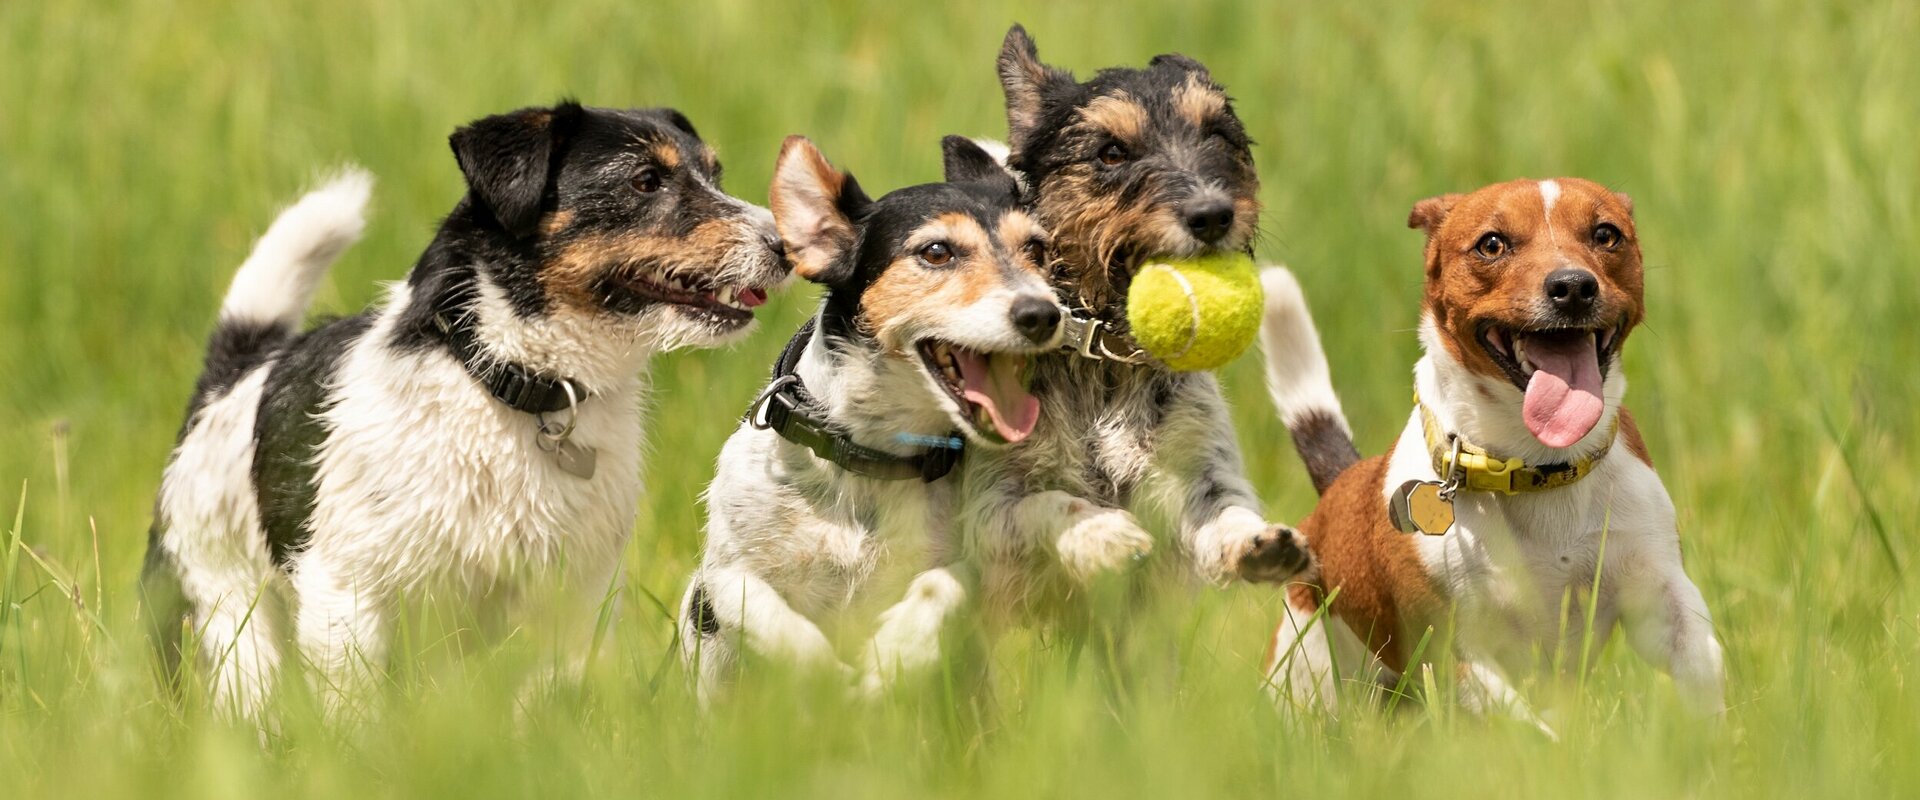 Vier Hunde (Jack Russell Terrier) spielen mit einem Ball auf einer Wiese